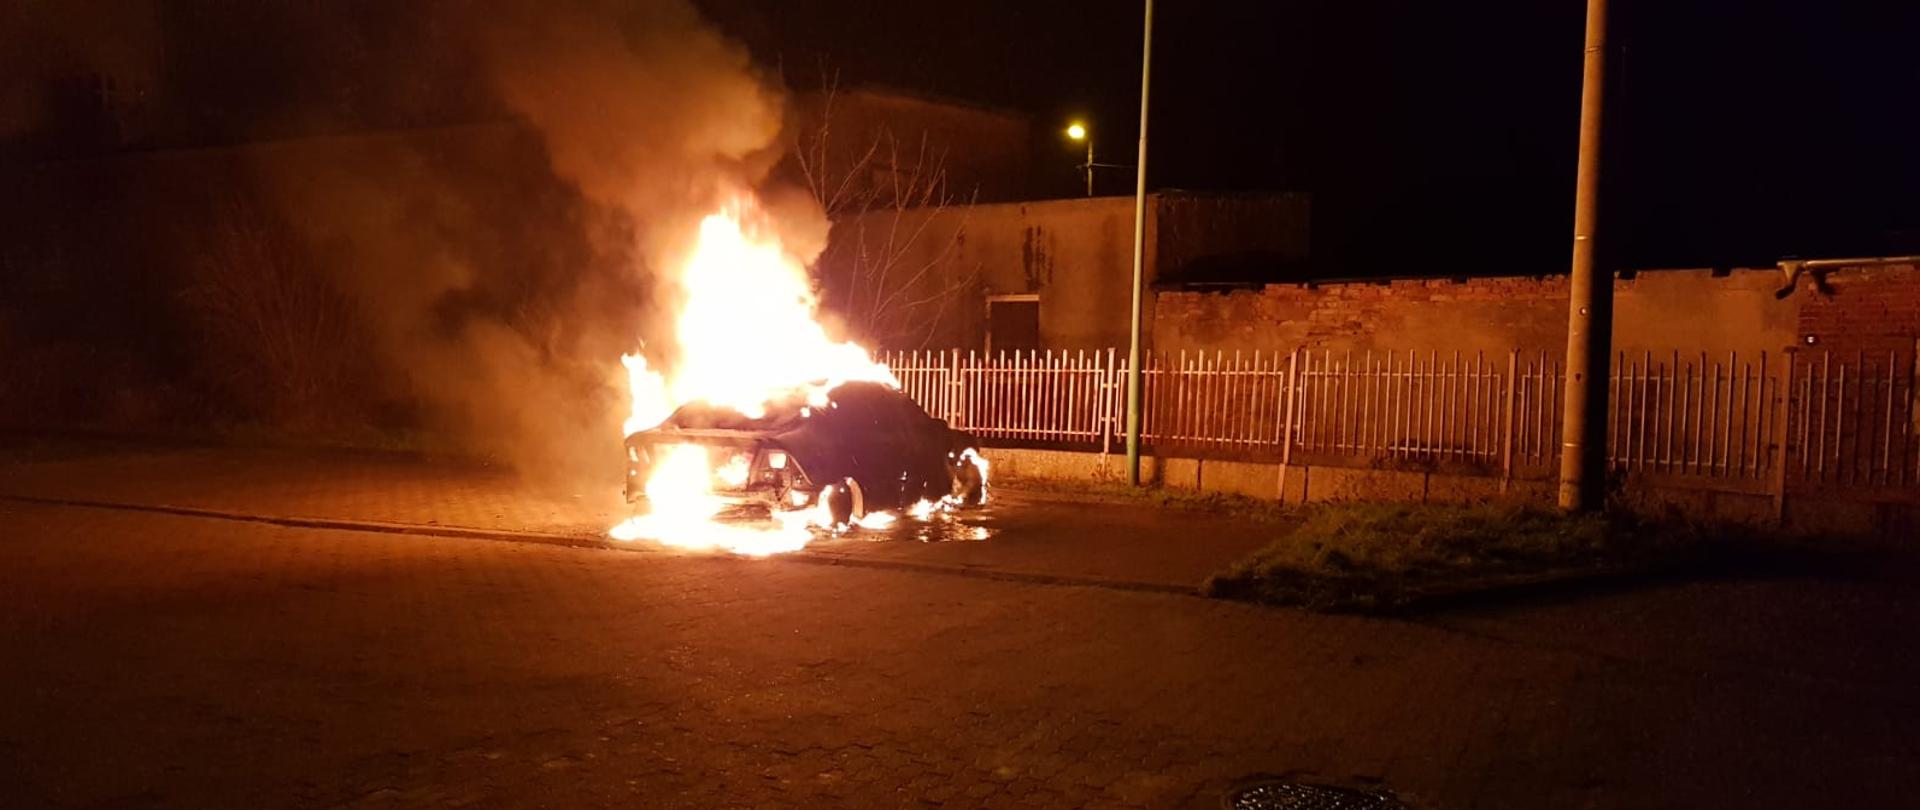 W Lubsku na parkingu przy ogrodzeniu pali się samochód osobowy. Samochód pali się w całości, płomienie sięgają dwóch metrów. W bliskiej odległości znajduje się budynek.